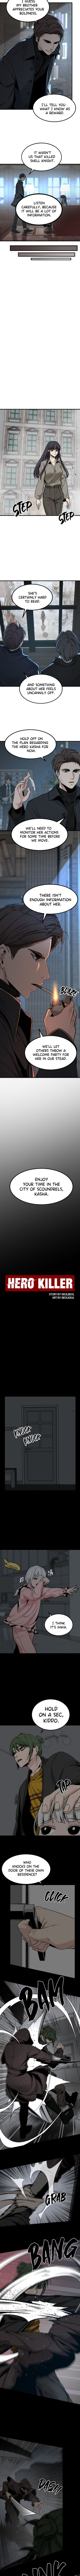 Hero Killer 99 4